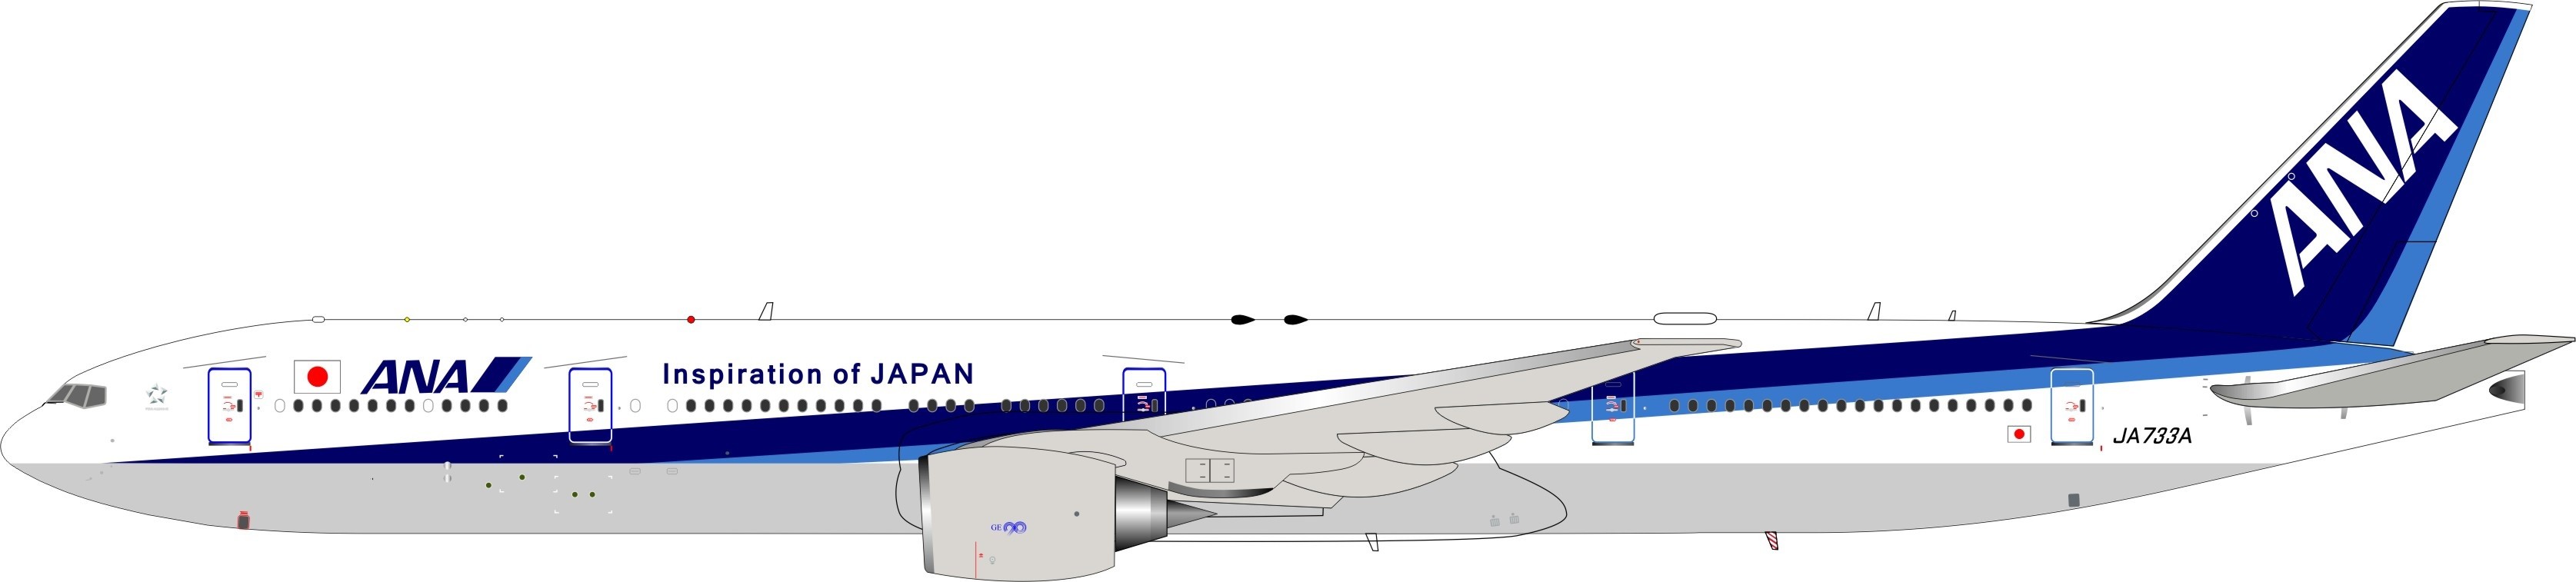 BBOX Models 200 ANA Boeing 777-300ER 